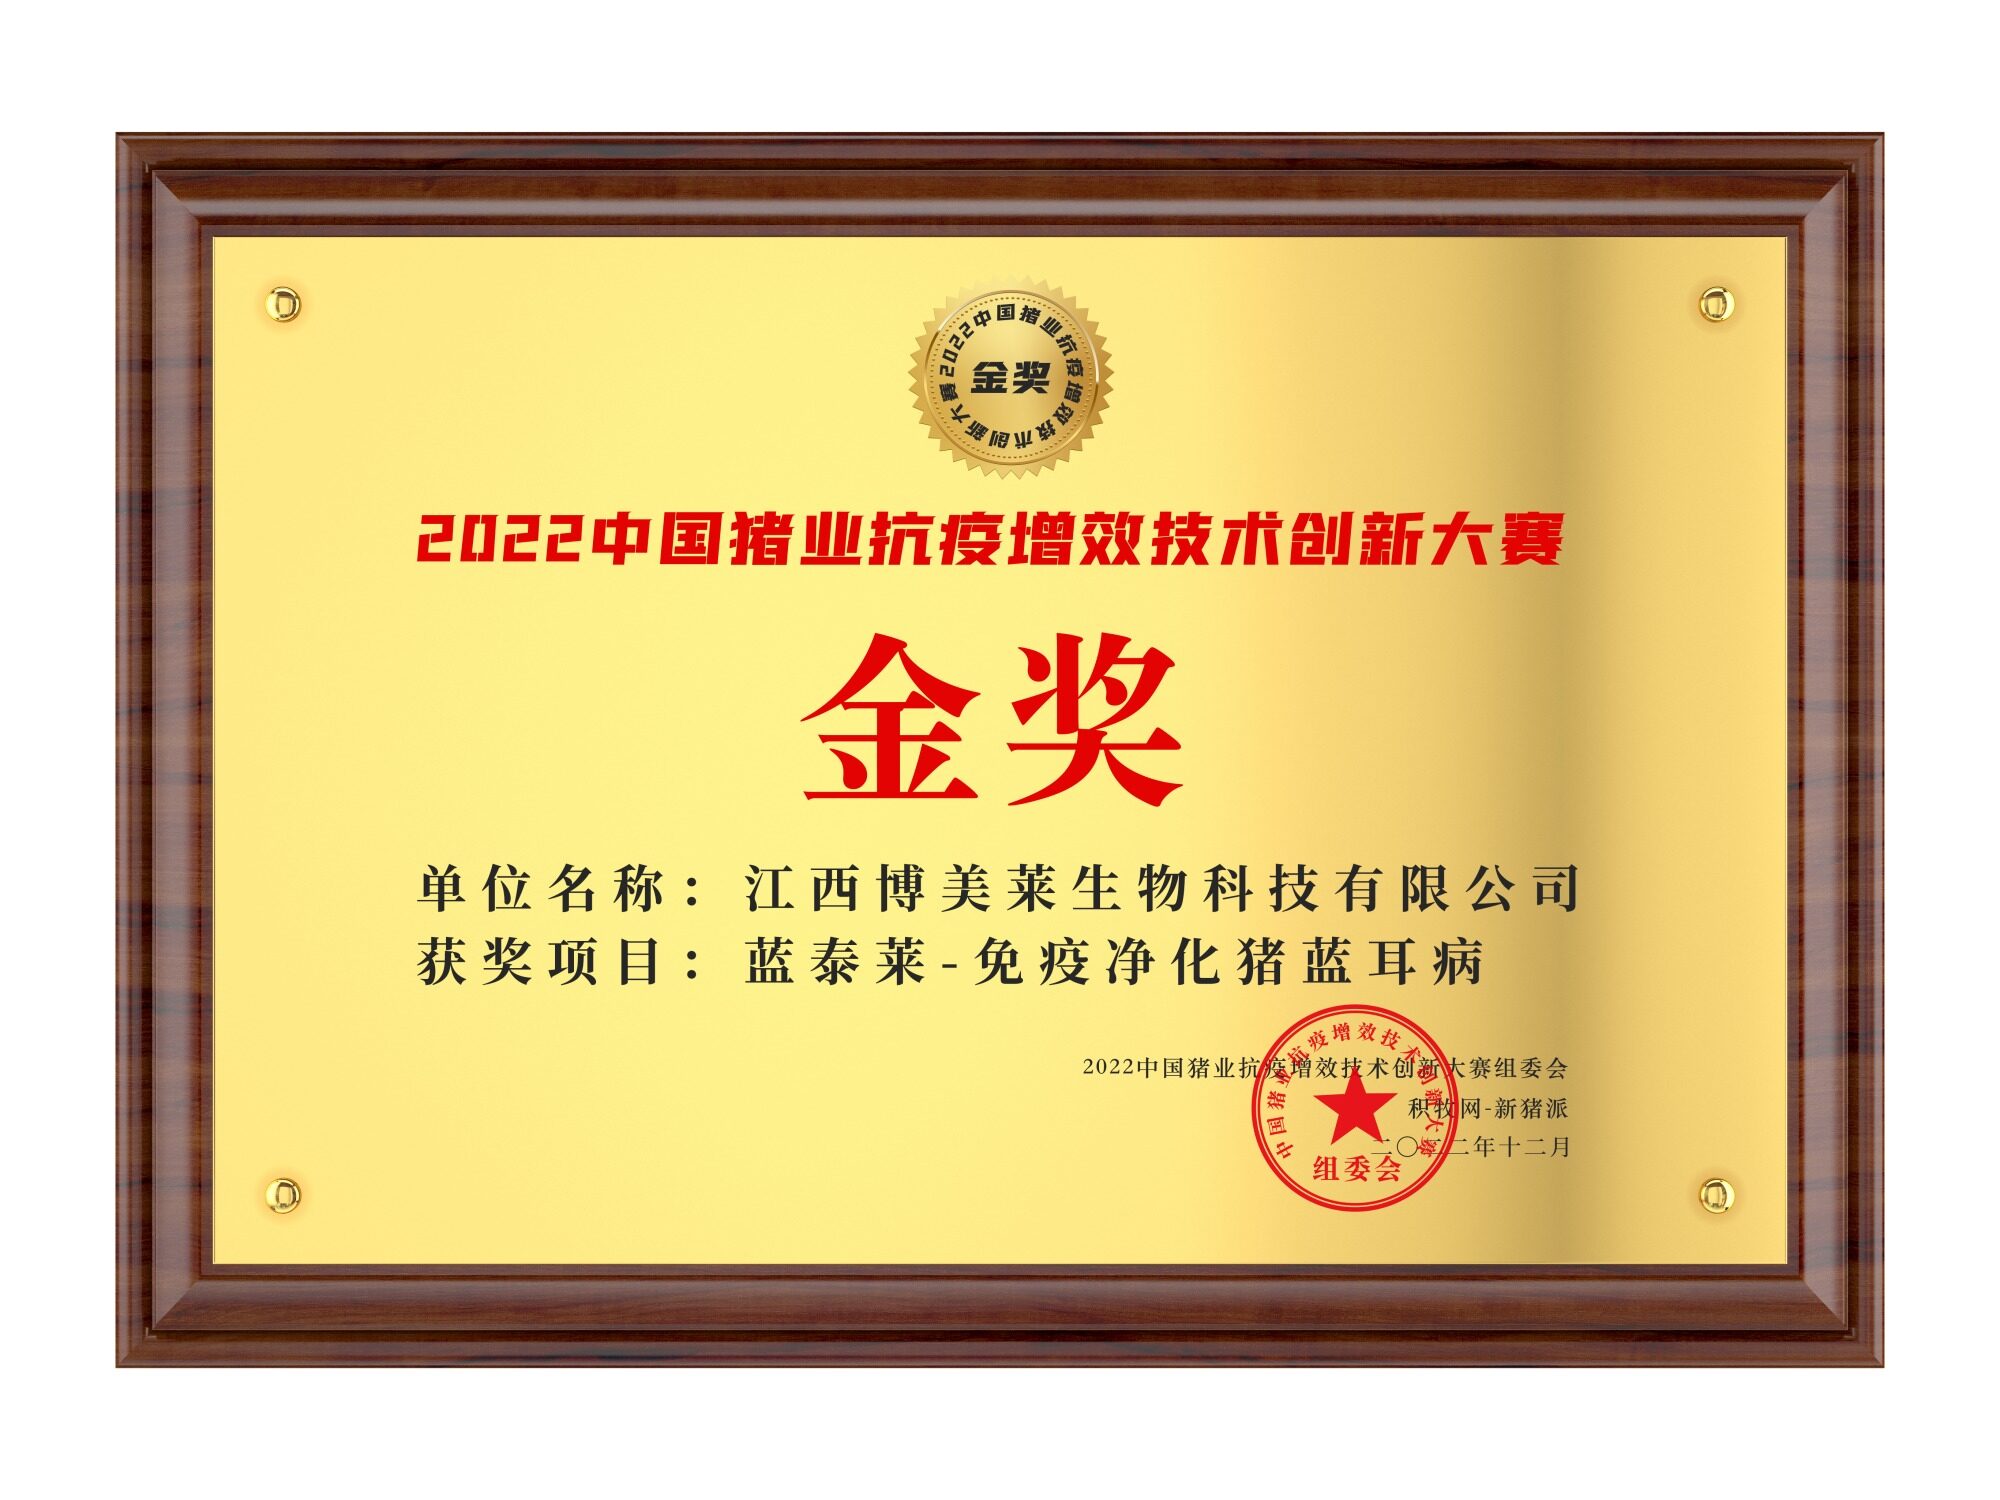 江西博美莱【蓝泰莱-免疫净化猪蓝耳病】荣获2022中国猪业抗疫增效技术创新大赛(第二季)·金奖